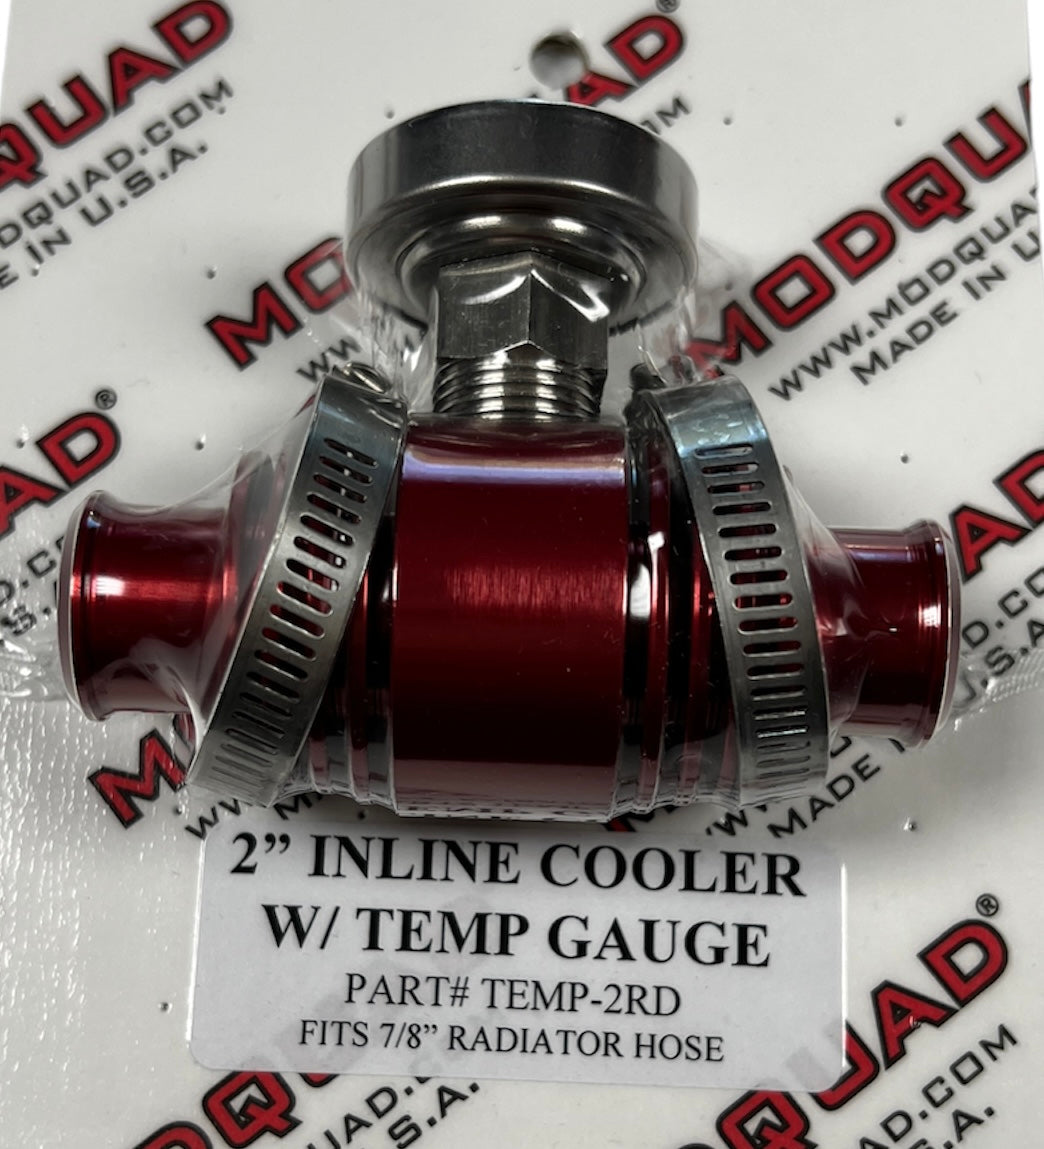 Inline Cooler w/Temp Gauge - Modquad